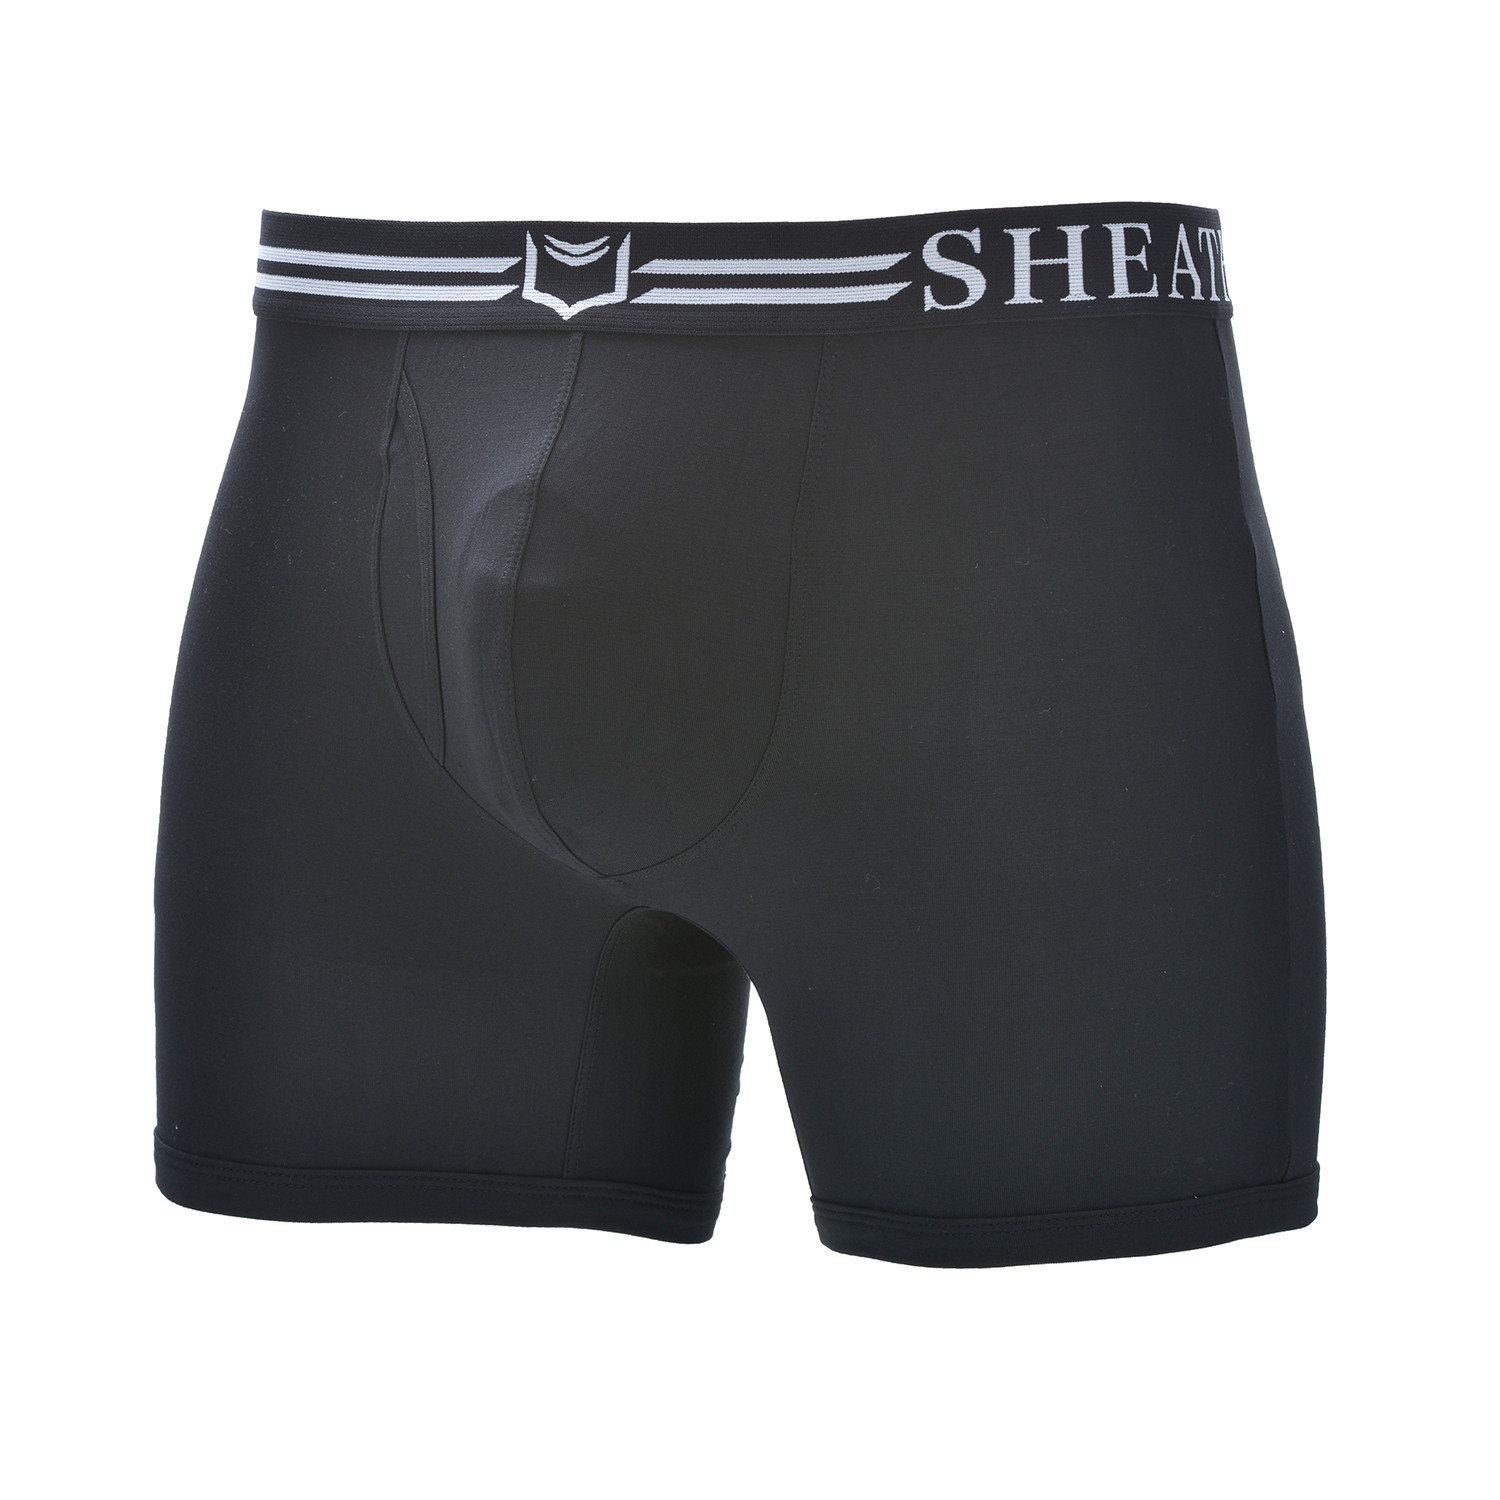 SHEATH 4.0 Men's Dual Pouch Boxer Brief // Black (Small) - Sheath